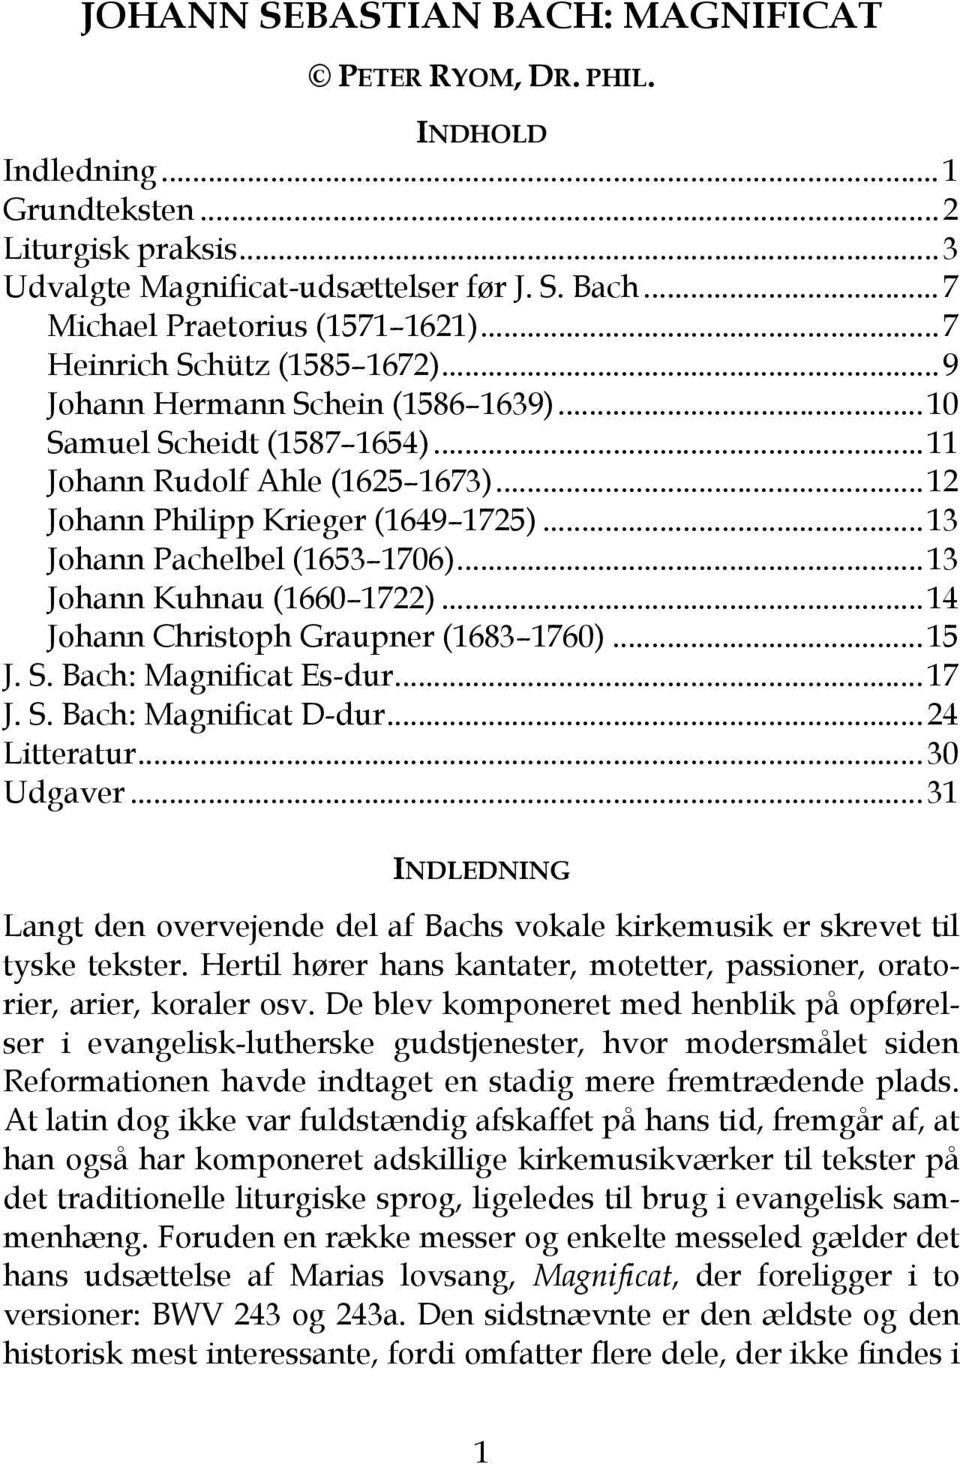 JOHANN SEBASTIAN BACH: MAGNIFICAT - PDF Gratis download